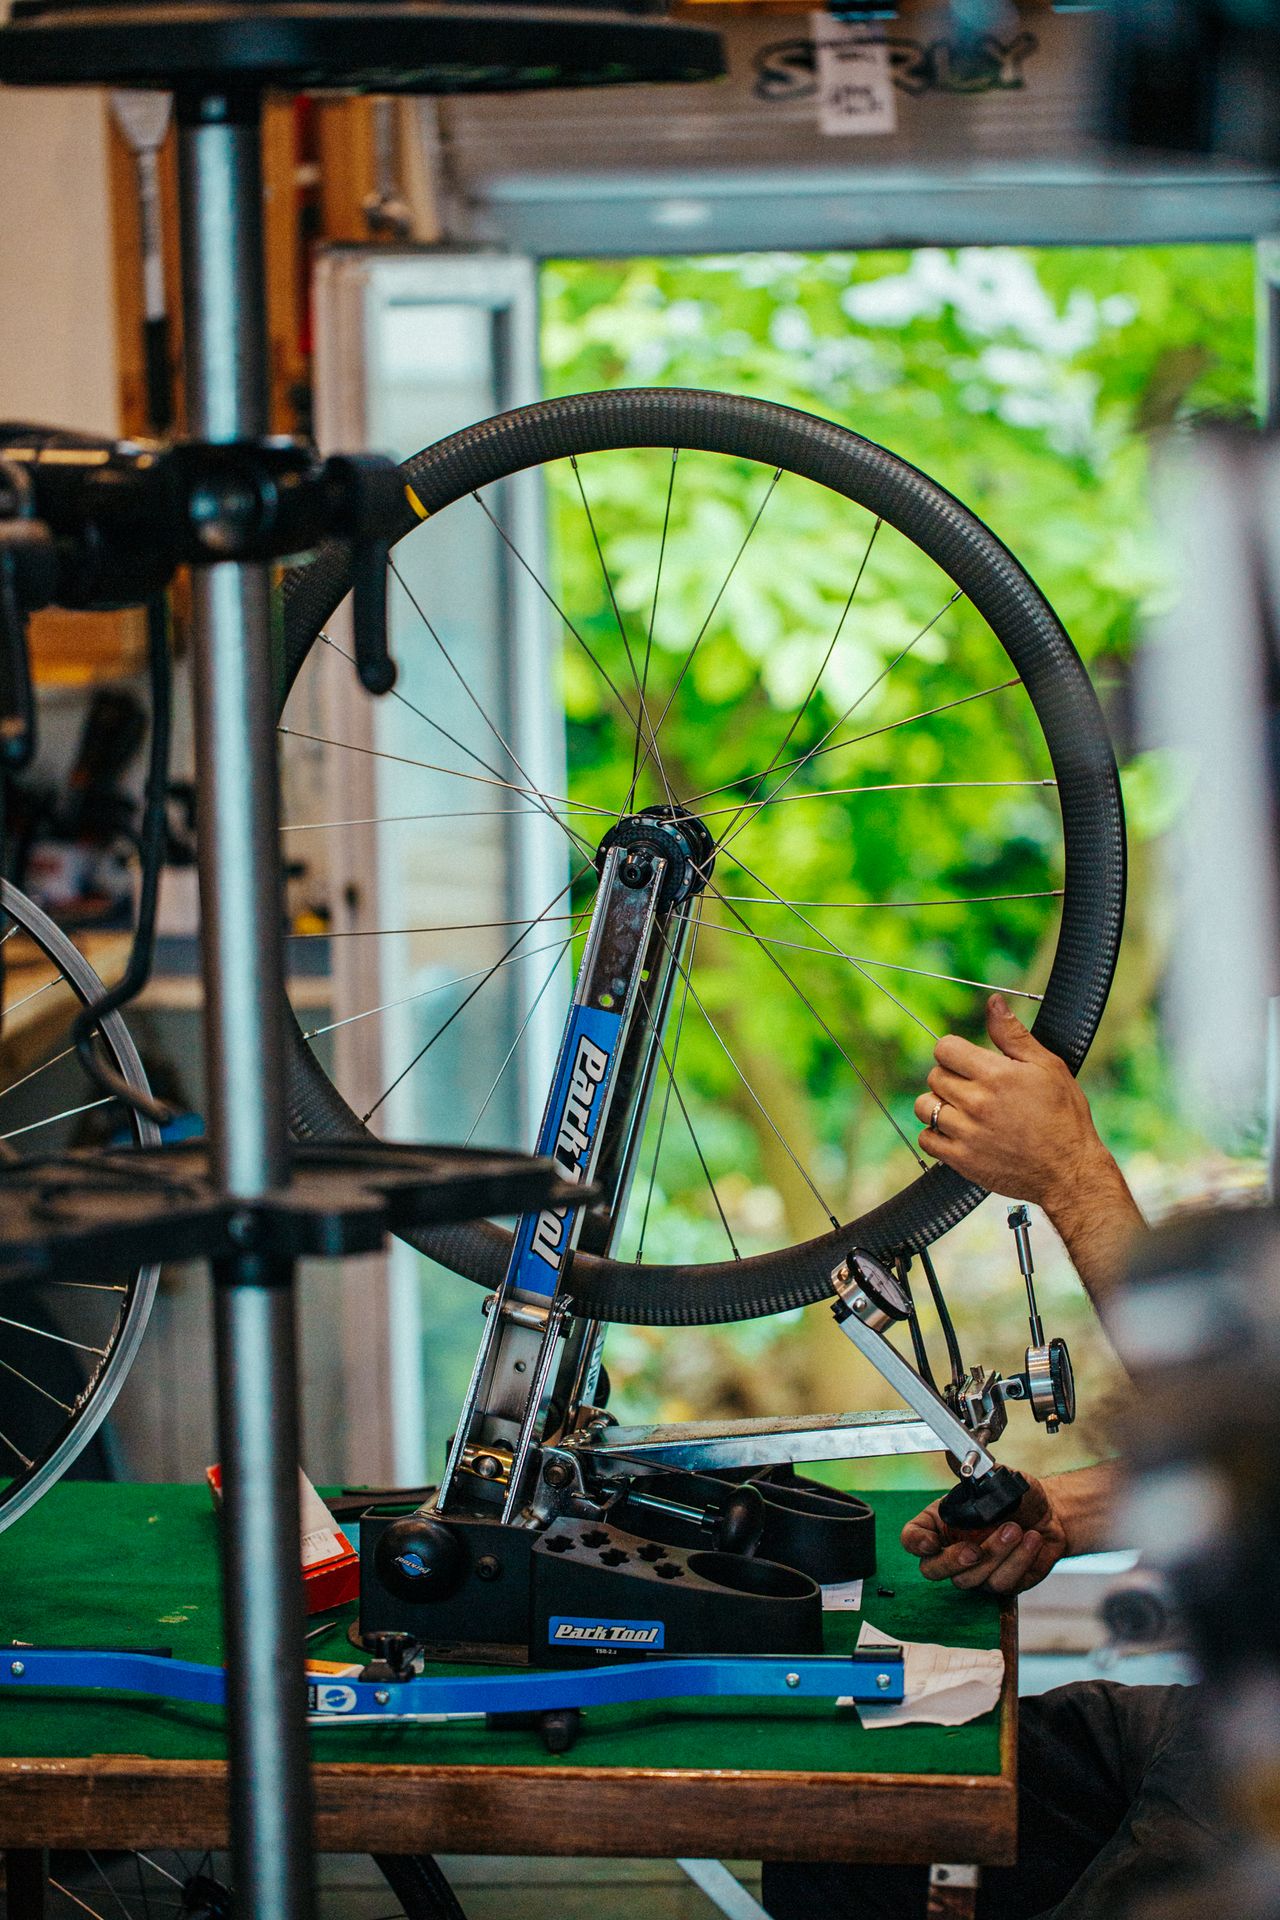 rayonnage, assemblage et mise en tension de ryaon pour une roue de vélo pignon fixe